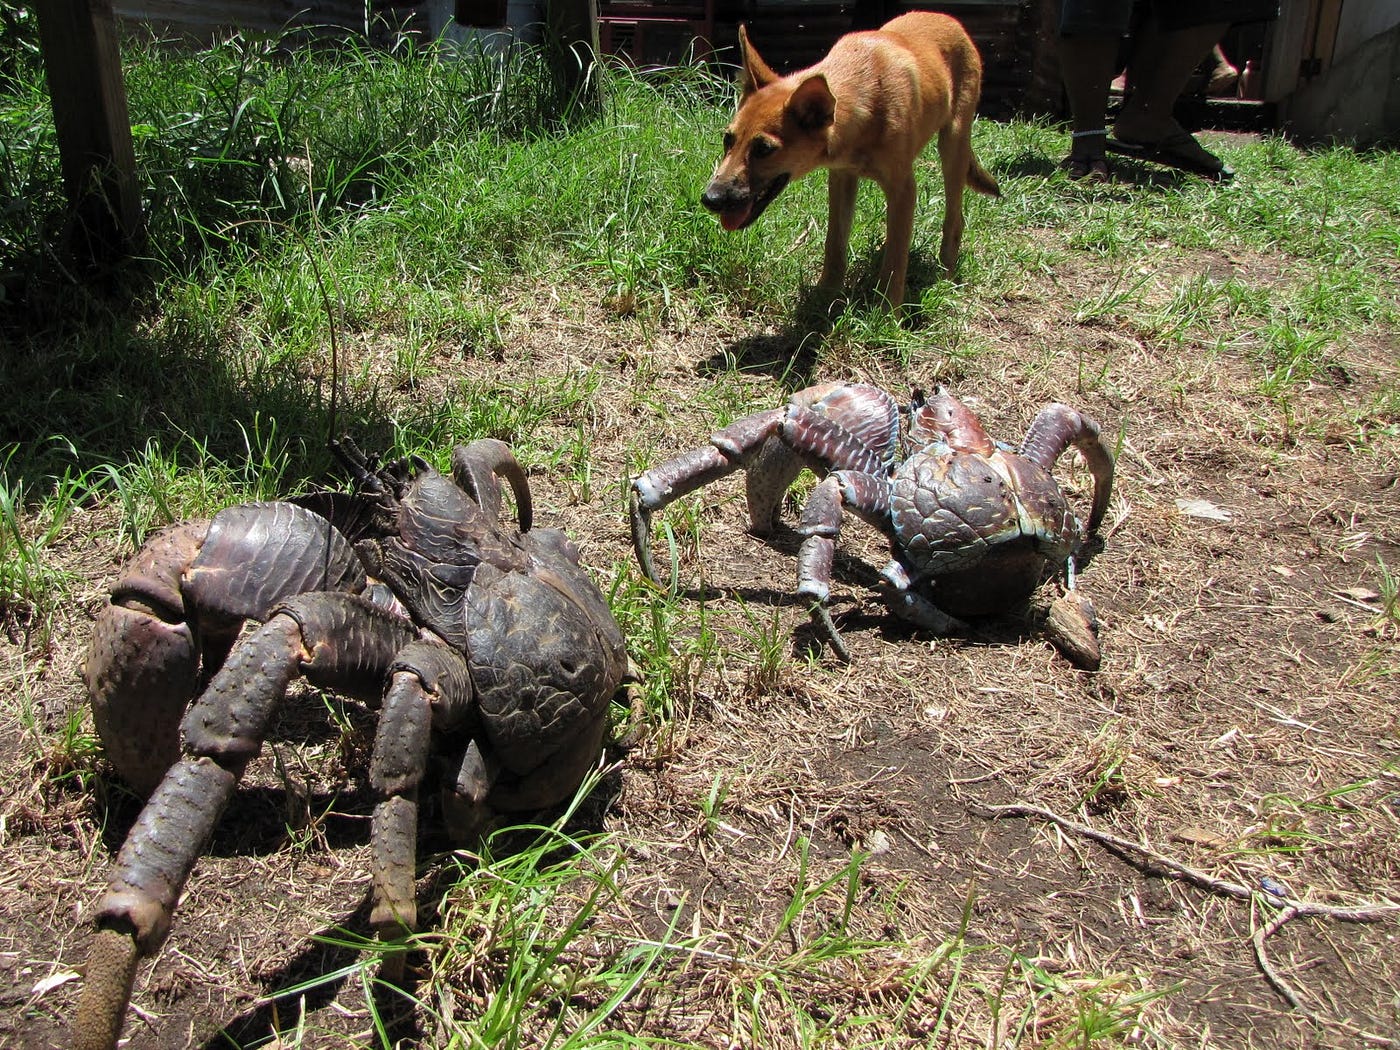 coconut crab attacks human